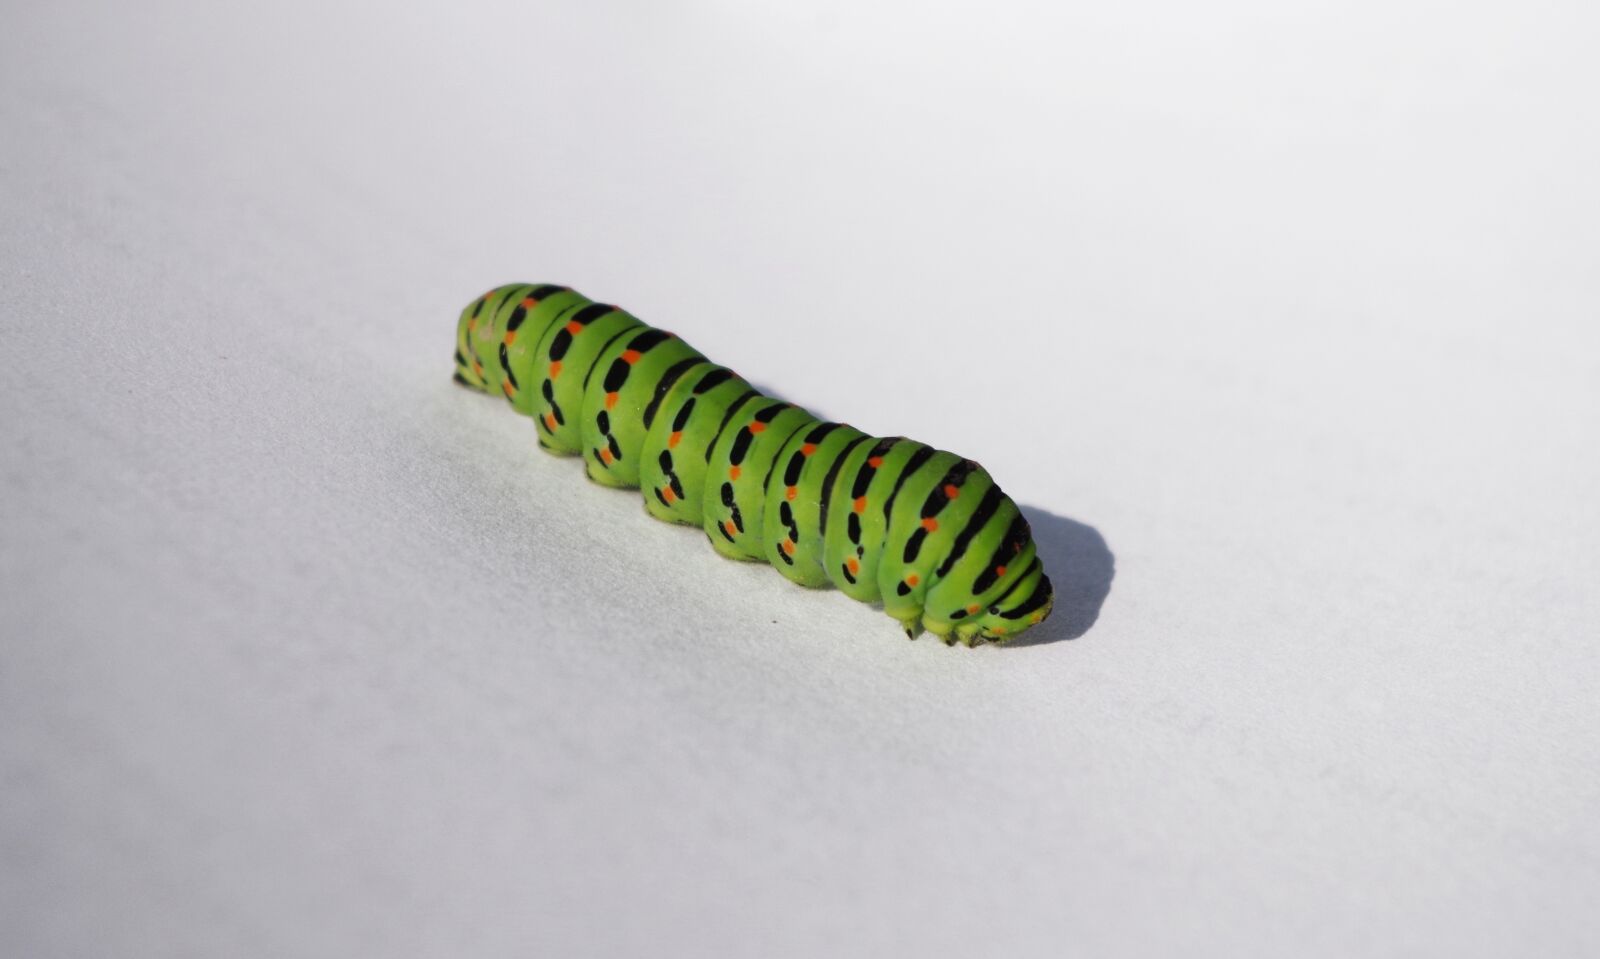 Pentax K-500 sample photo. Caterpillar, green, butterfly photography